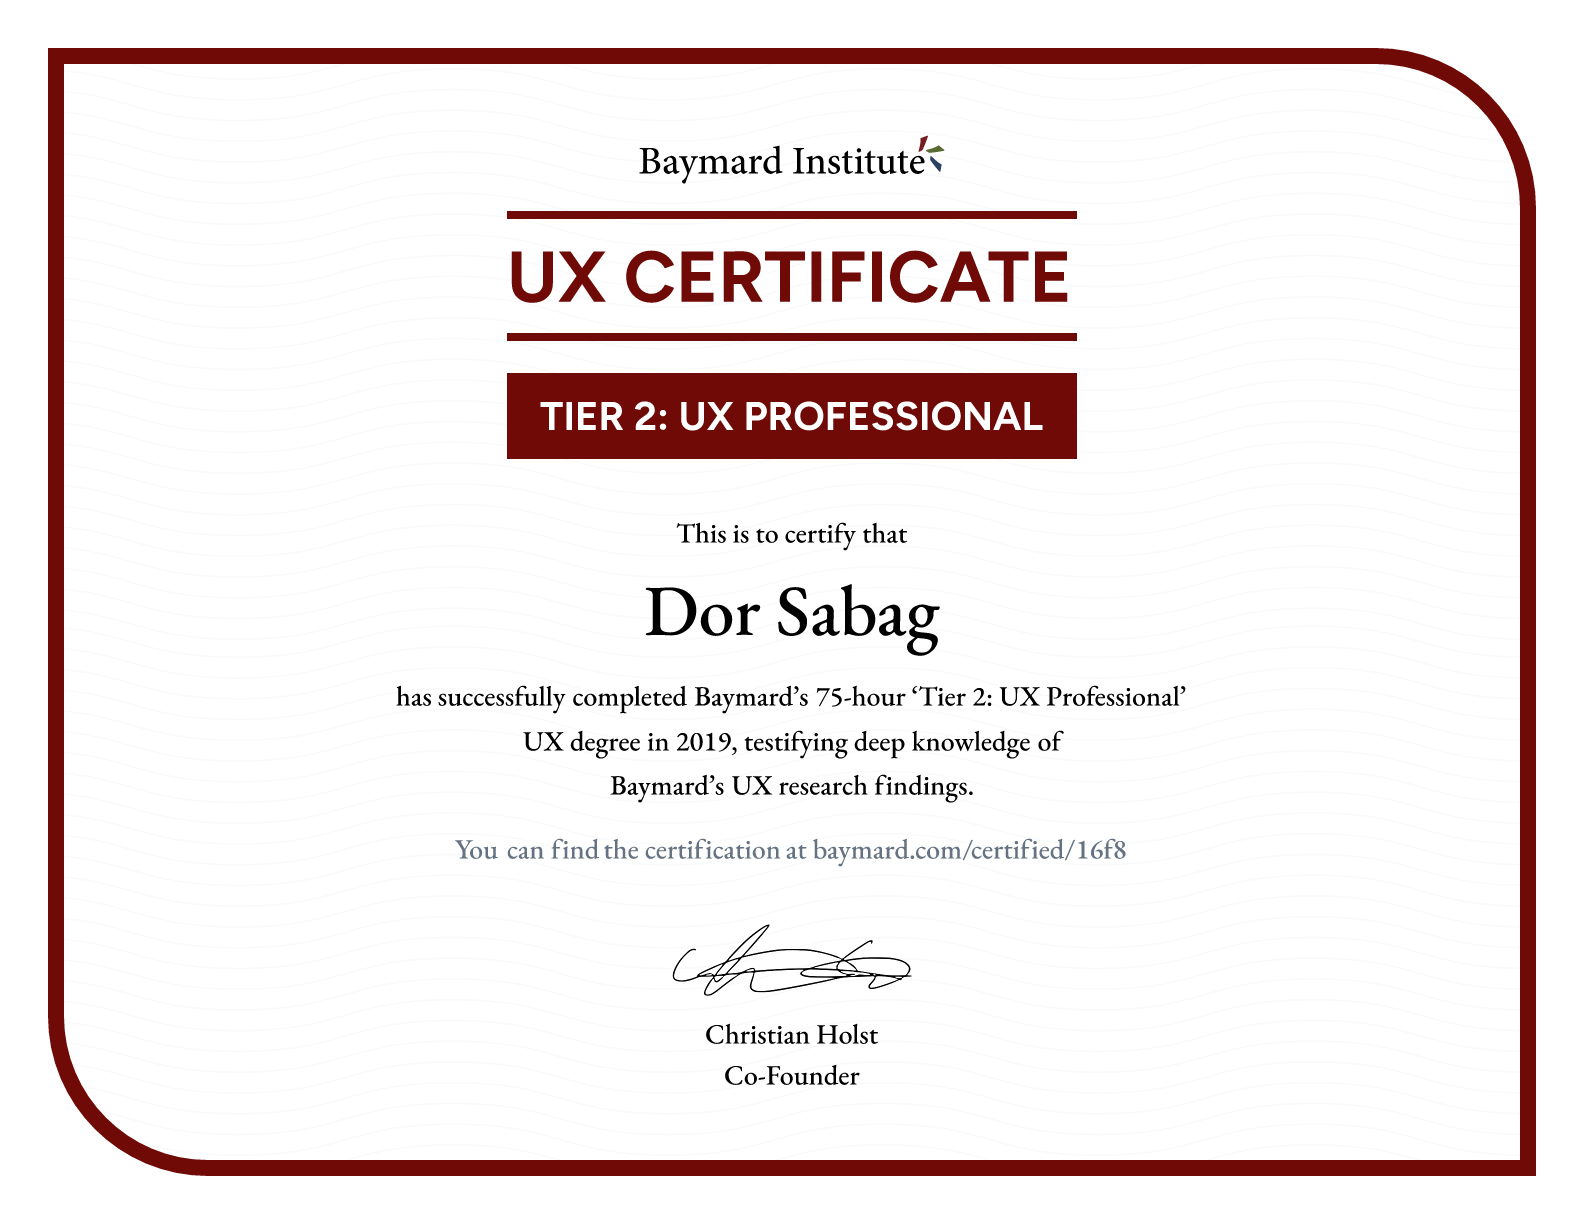 Dor Sabag’s certificate